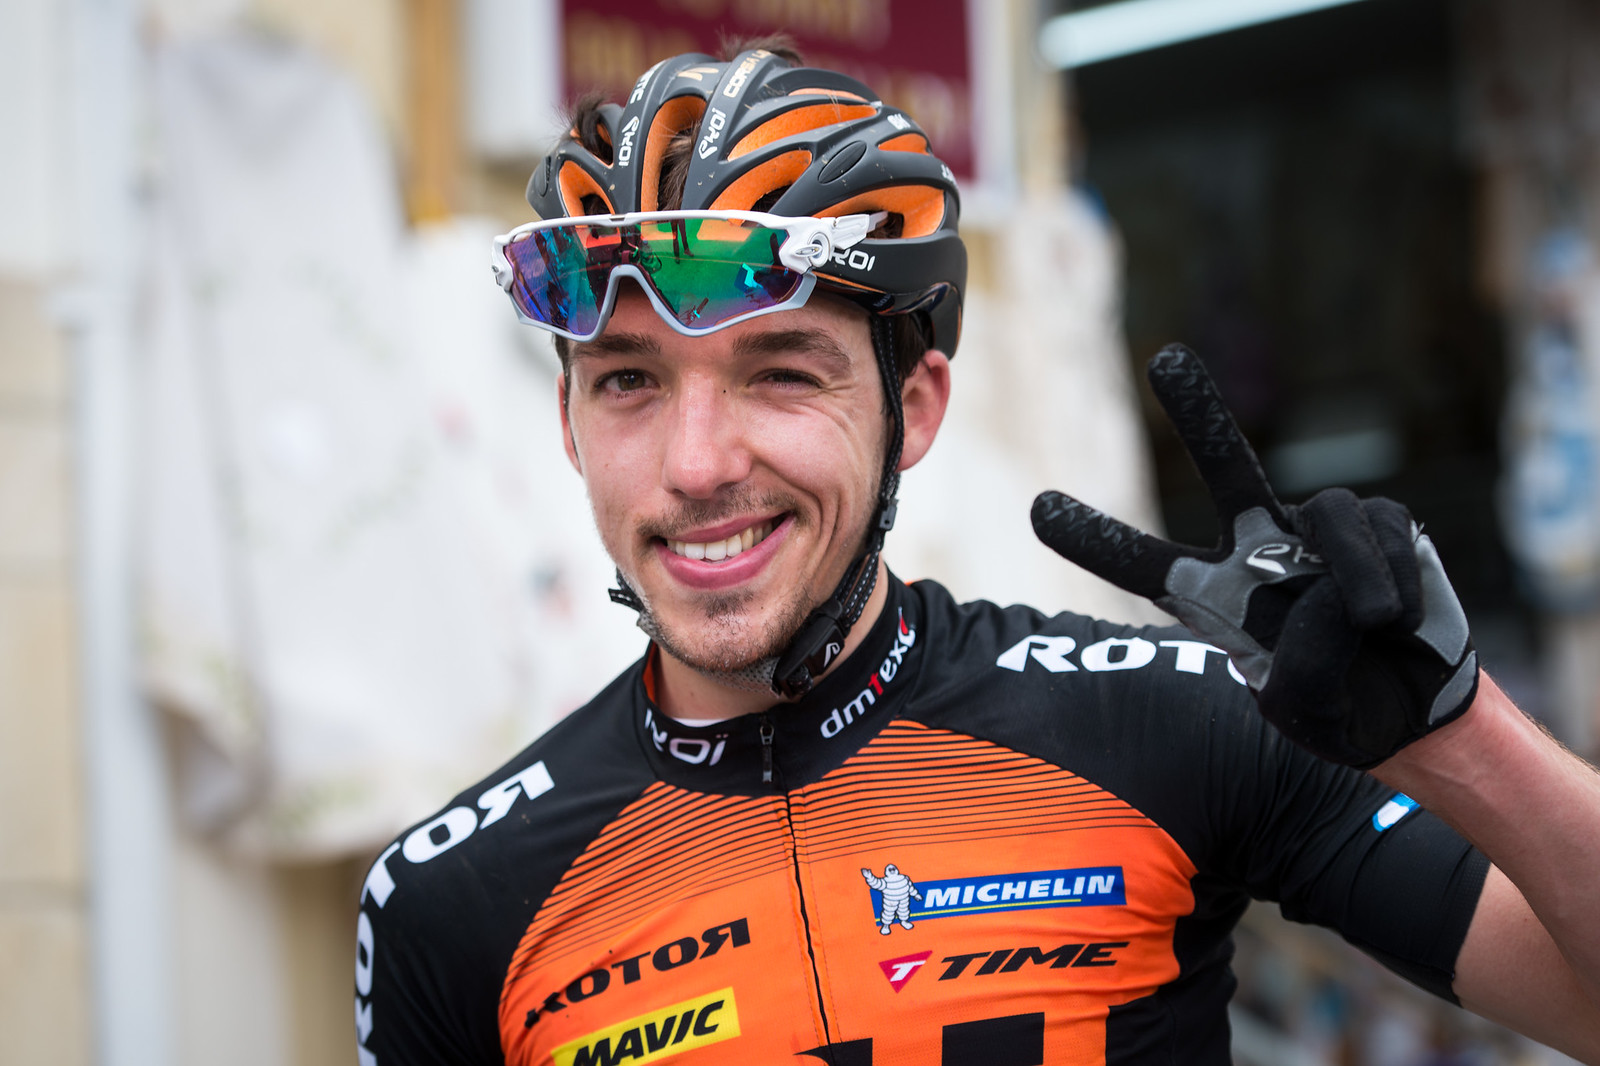 Jordan Sarrou is blij met zijn etappesucces. Foto ©Andreas Dobslaff/EGO Promotion